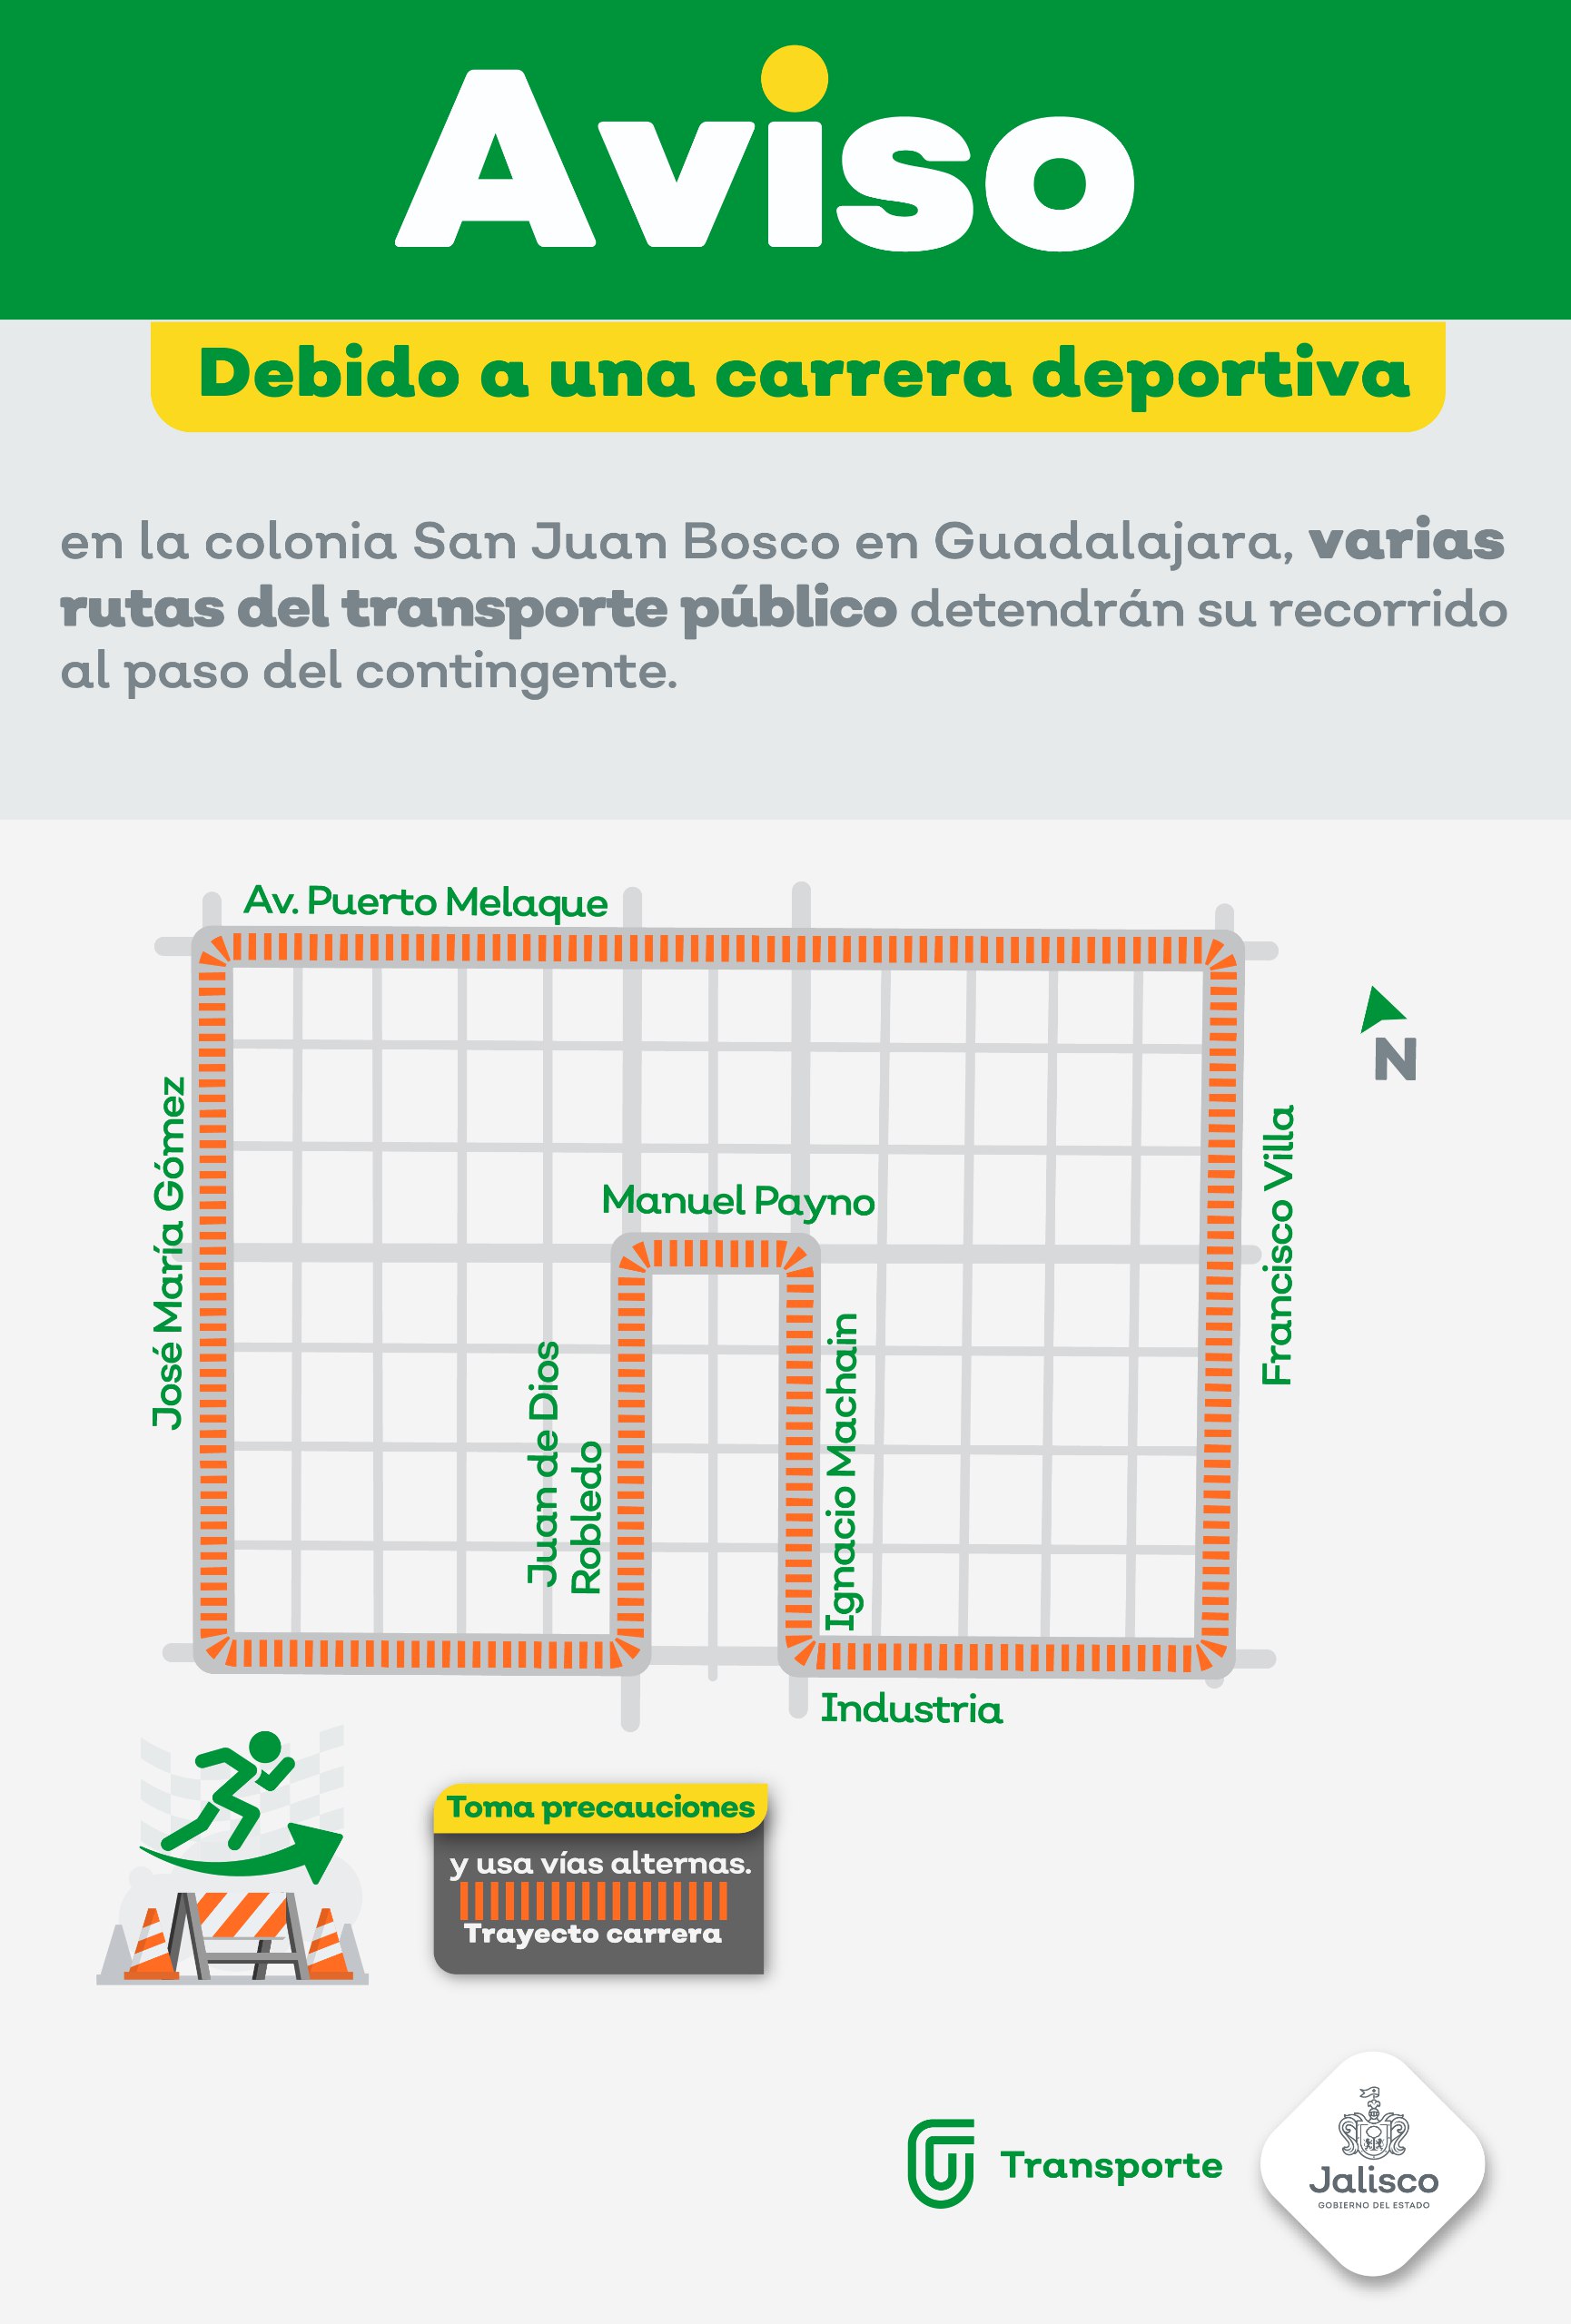 Debido a tres carreras deportivas a realizarse en Guadalajara, el domingo varias rutas del transporte público detendrán su recorrido